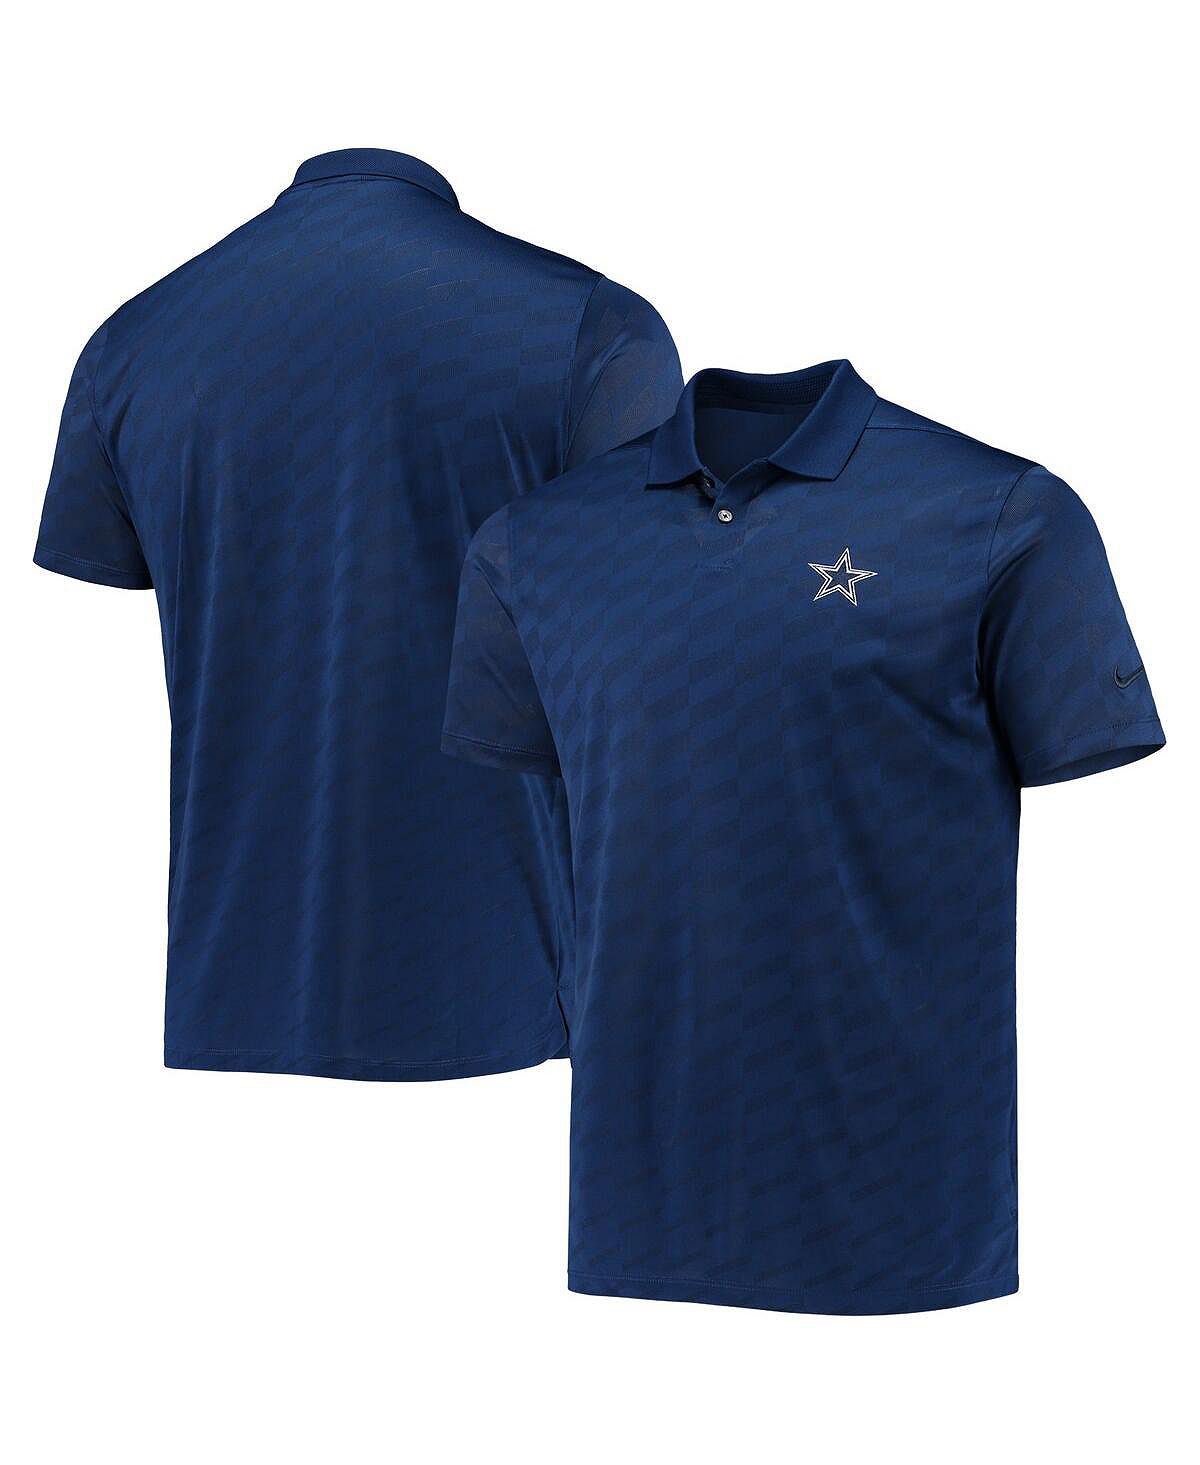 Мужская темно-синяя рубашка-поло dallas cowboys с жаккардовым принтом и крыльями Nike, синий